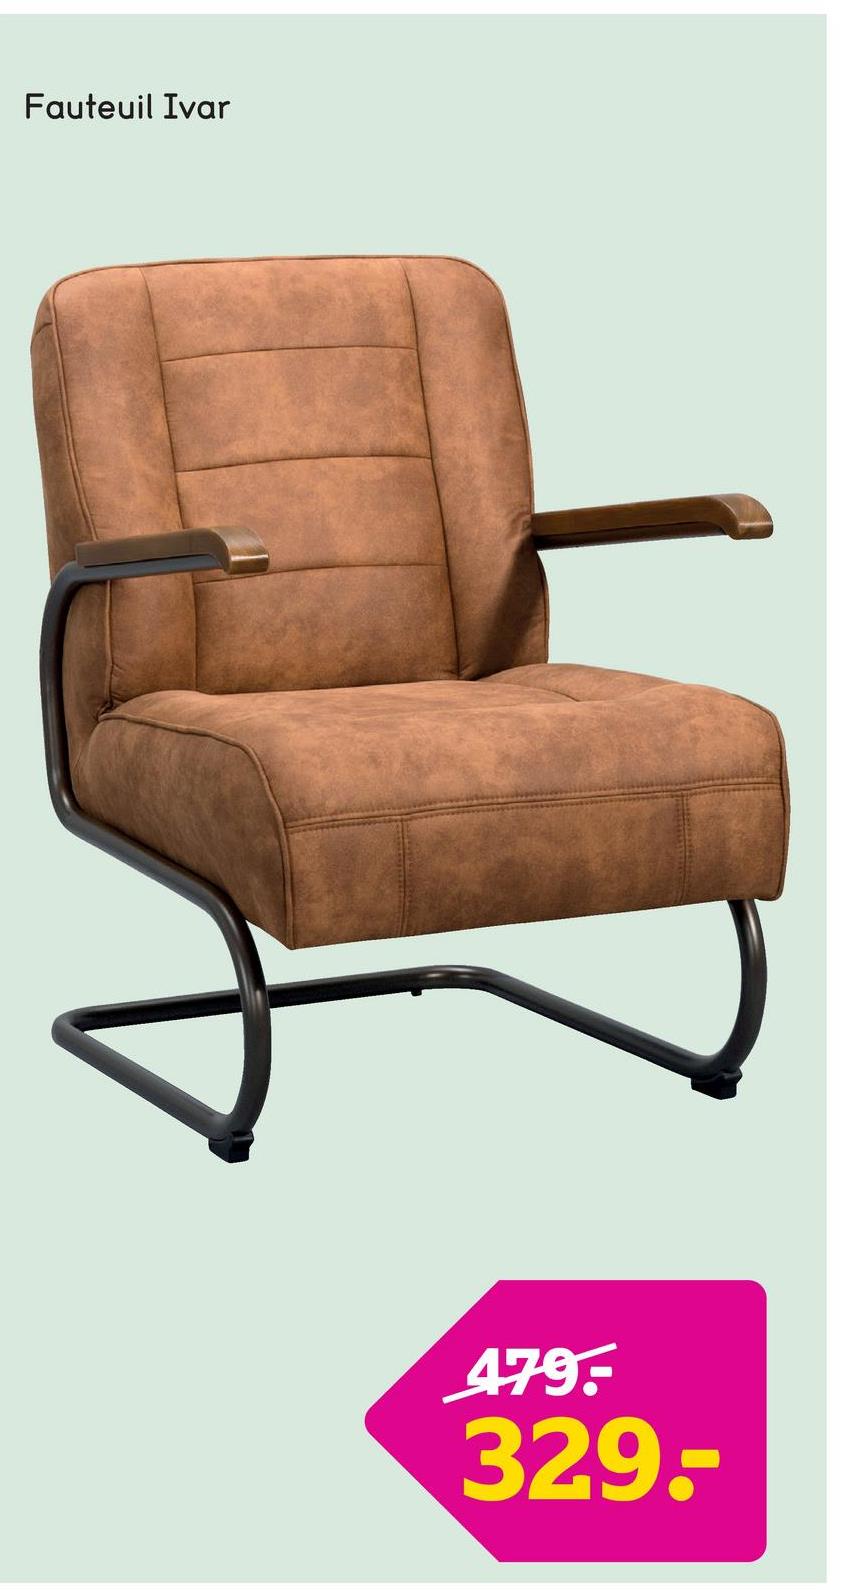 Fauteuil Ivar - tissu - cognac Le fauteuil Ivar est un fauteuil industriel à l'esthétique sobre. Ce fauteuil au look skaï a une couleur cognac vintage et est recouvert du tissu Cowboy.